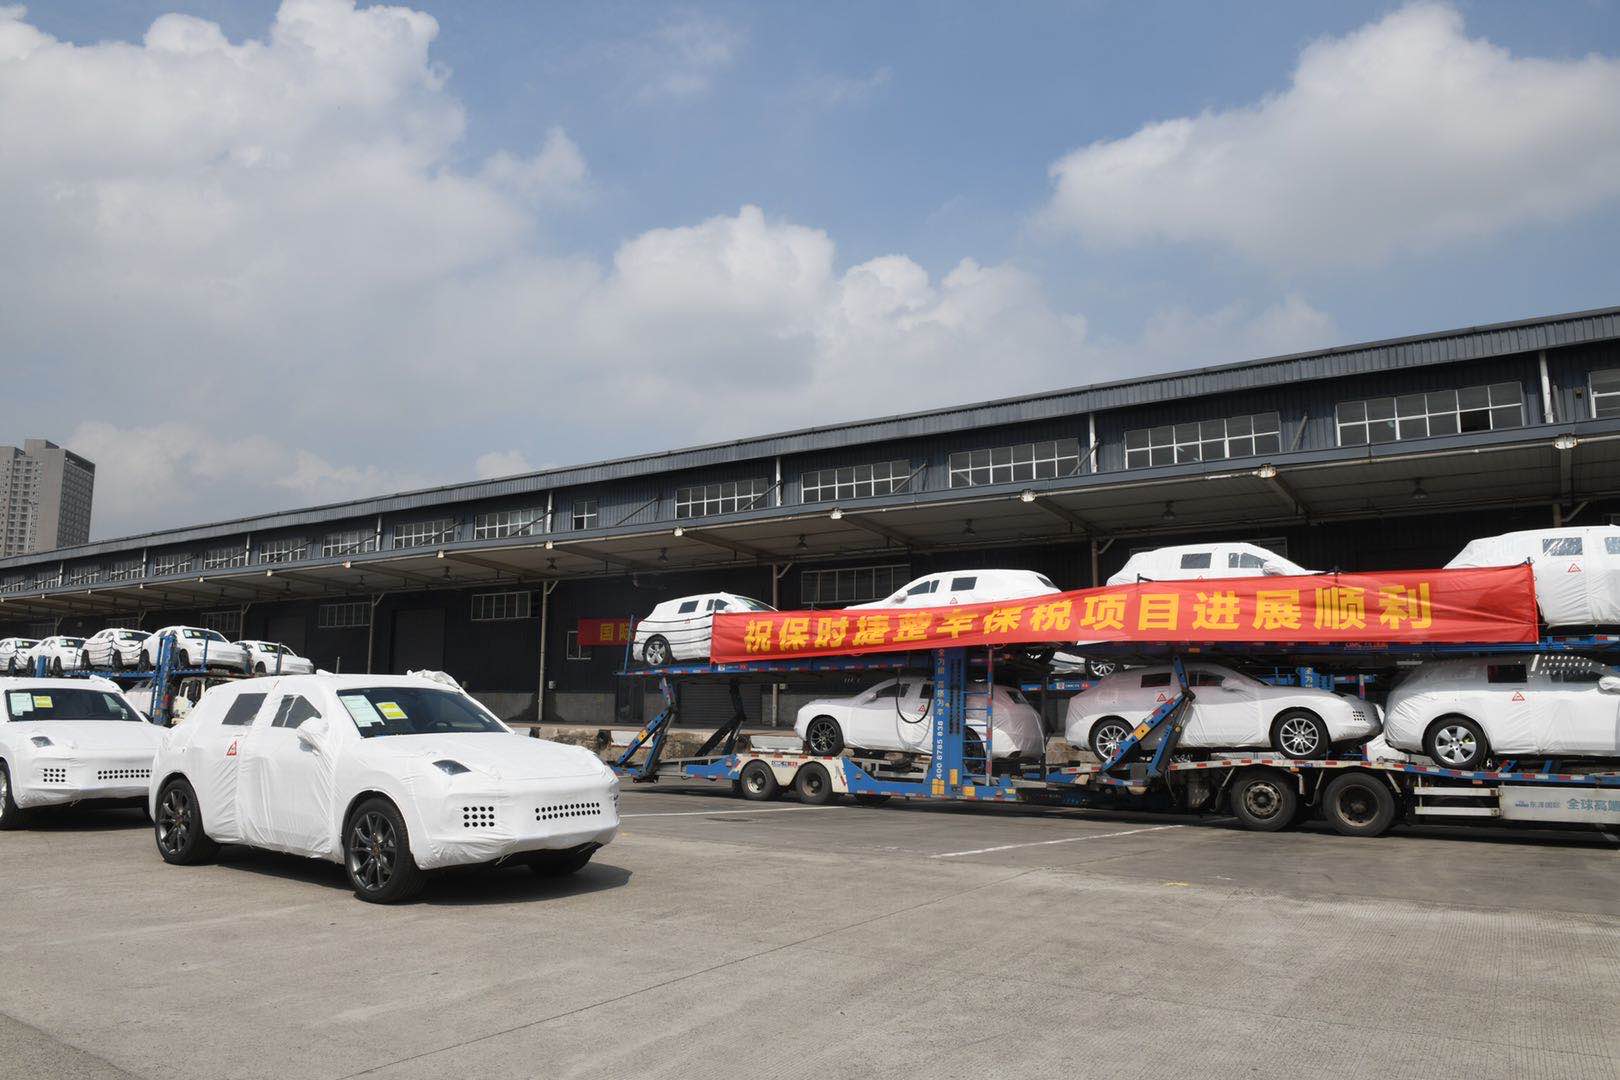 内陆首批进口保税大贸整车运抵重庆西永综保区-货之家